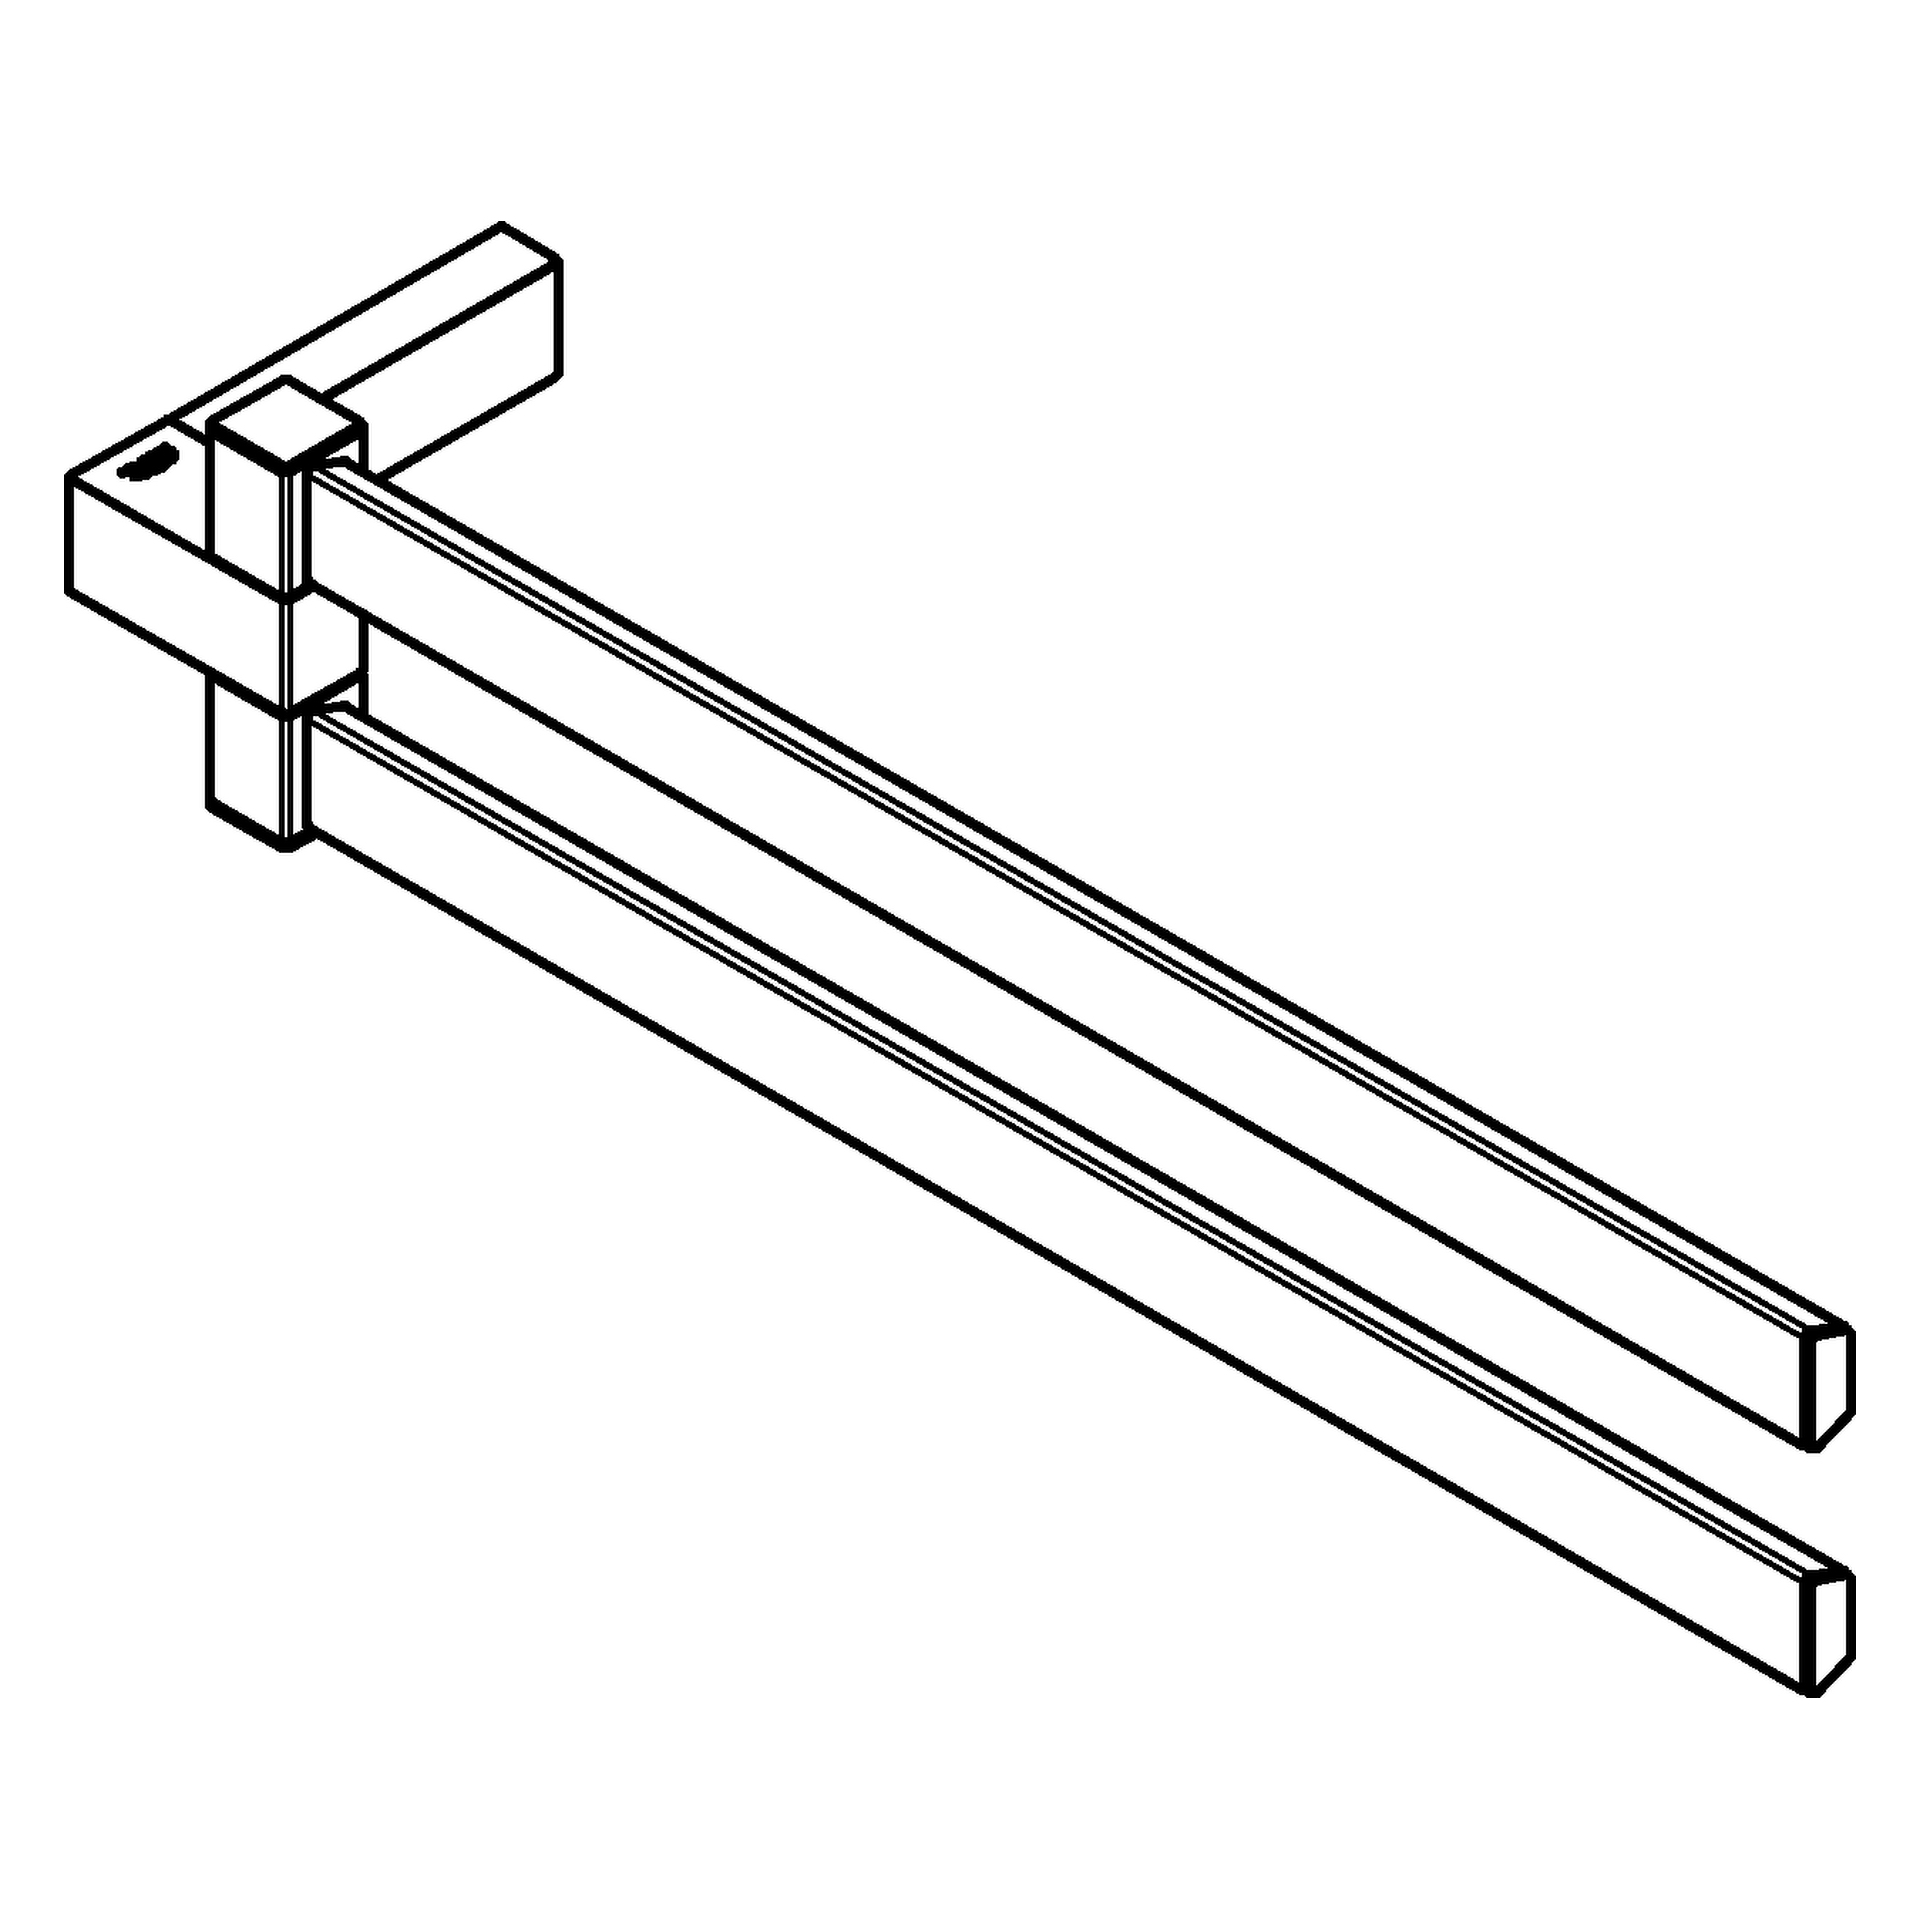 Doppel-Handtuchhalter Selection Cube 40768, 2-armig, schwenkbar, 400 mm, chrom